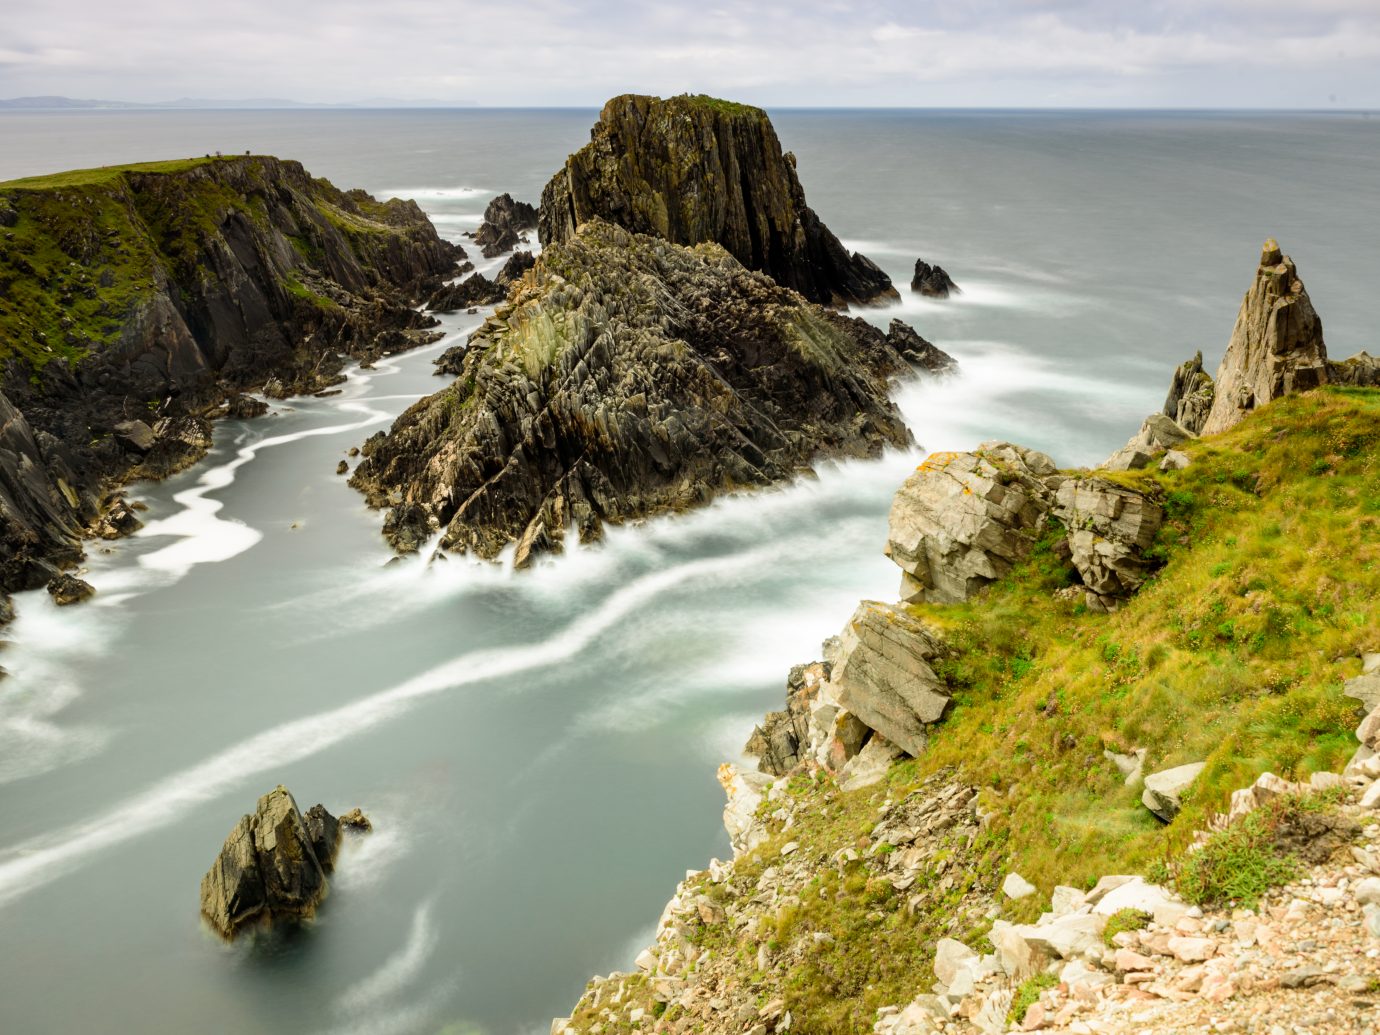 Malin Head rocks in Republic of Ireland